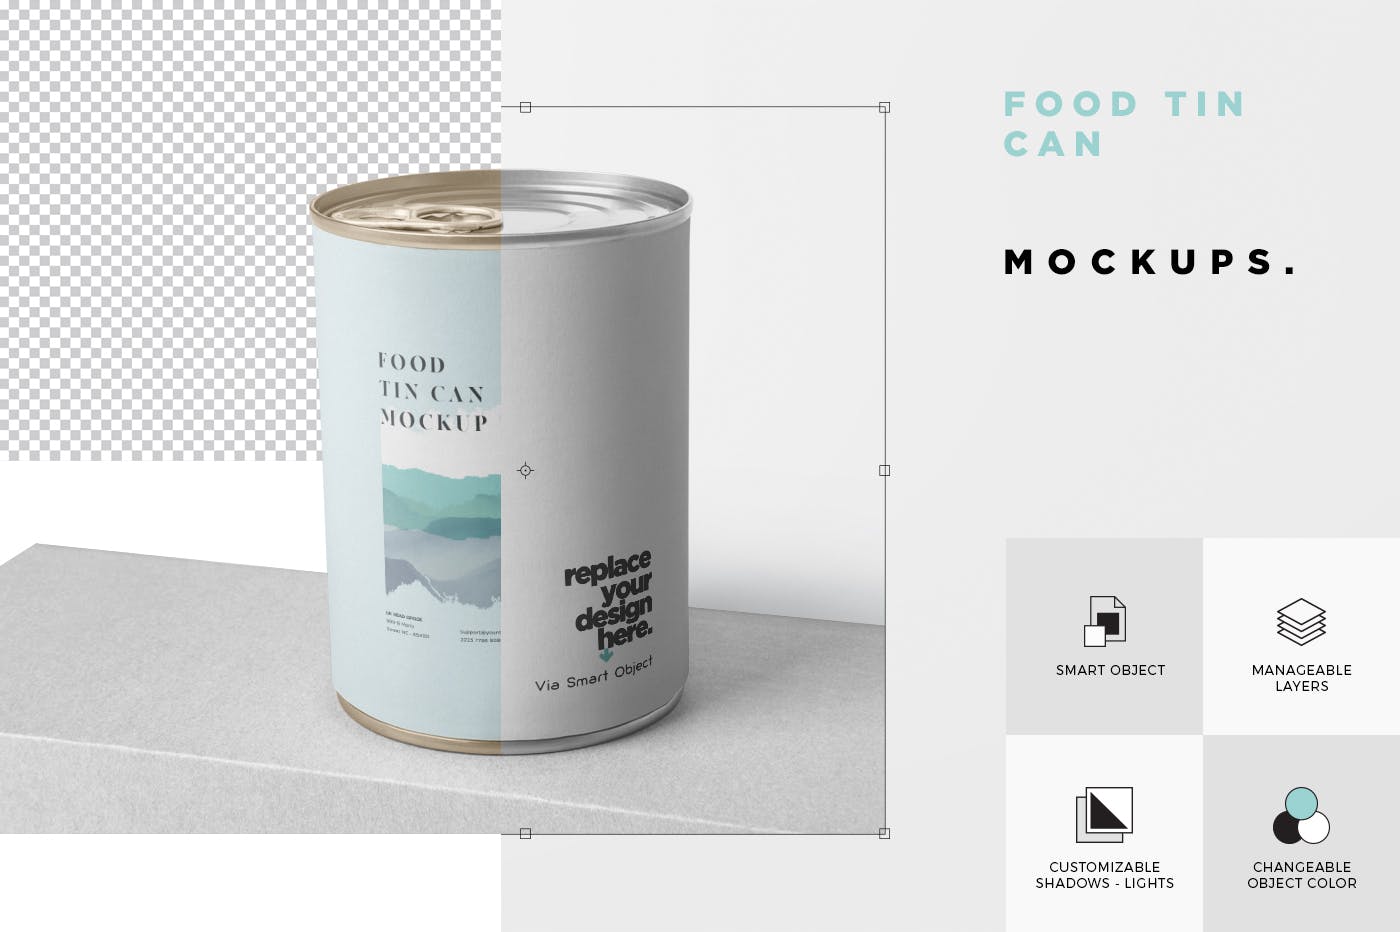 即食罐头包装外观设计样机模板 Food Tin Can Mockup插图(5)